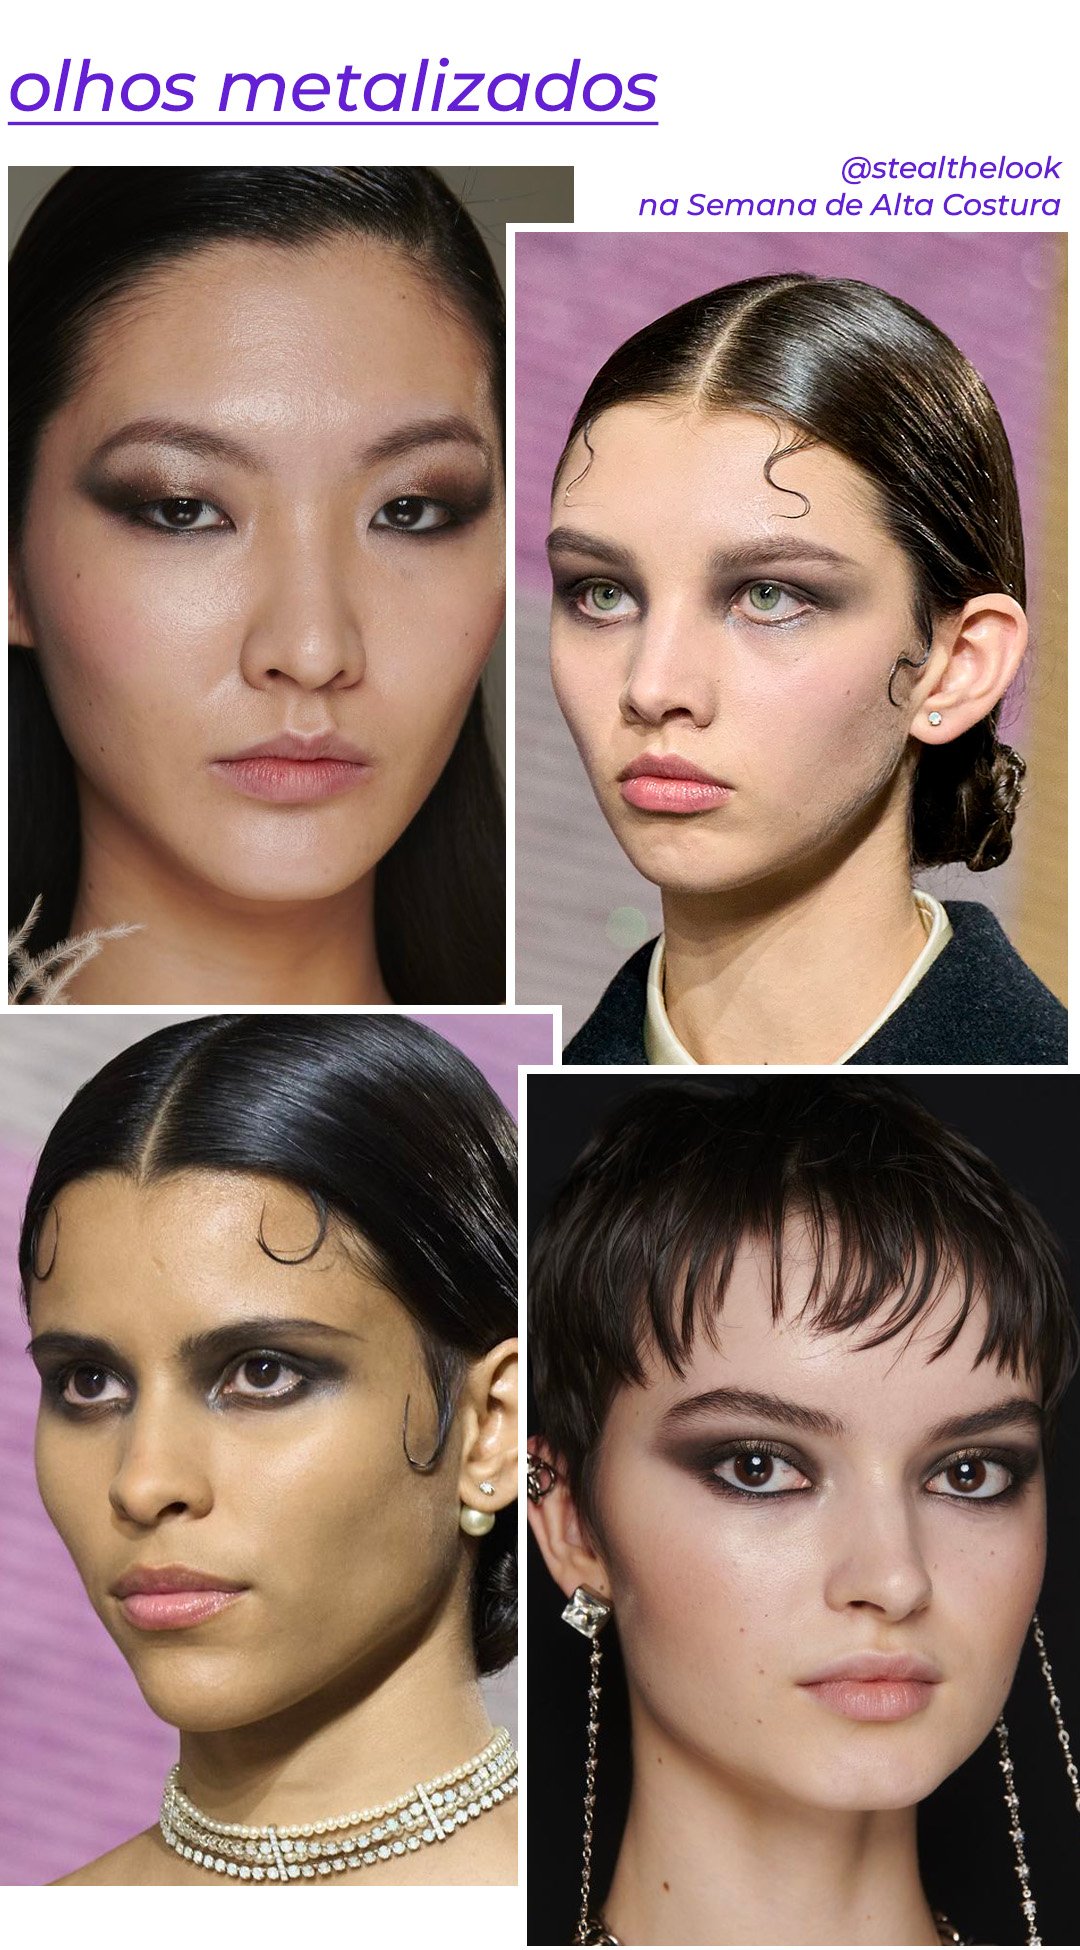 Christian Dior, Georges Hobeika - maquiagem-olho-esfumado-metalico - tendências de beleza - verão - brasil - https://stealthelook.com.br